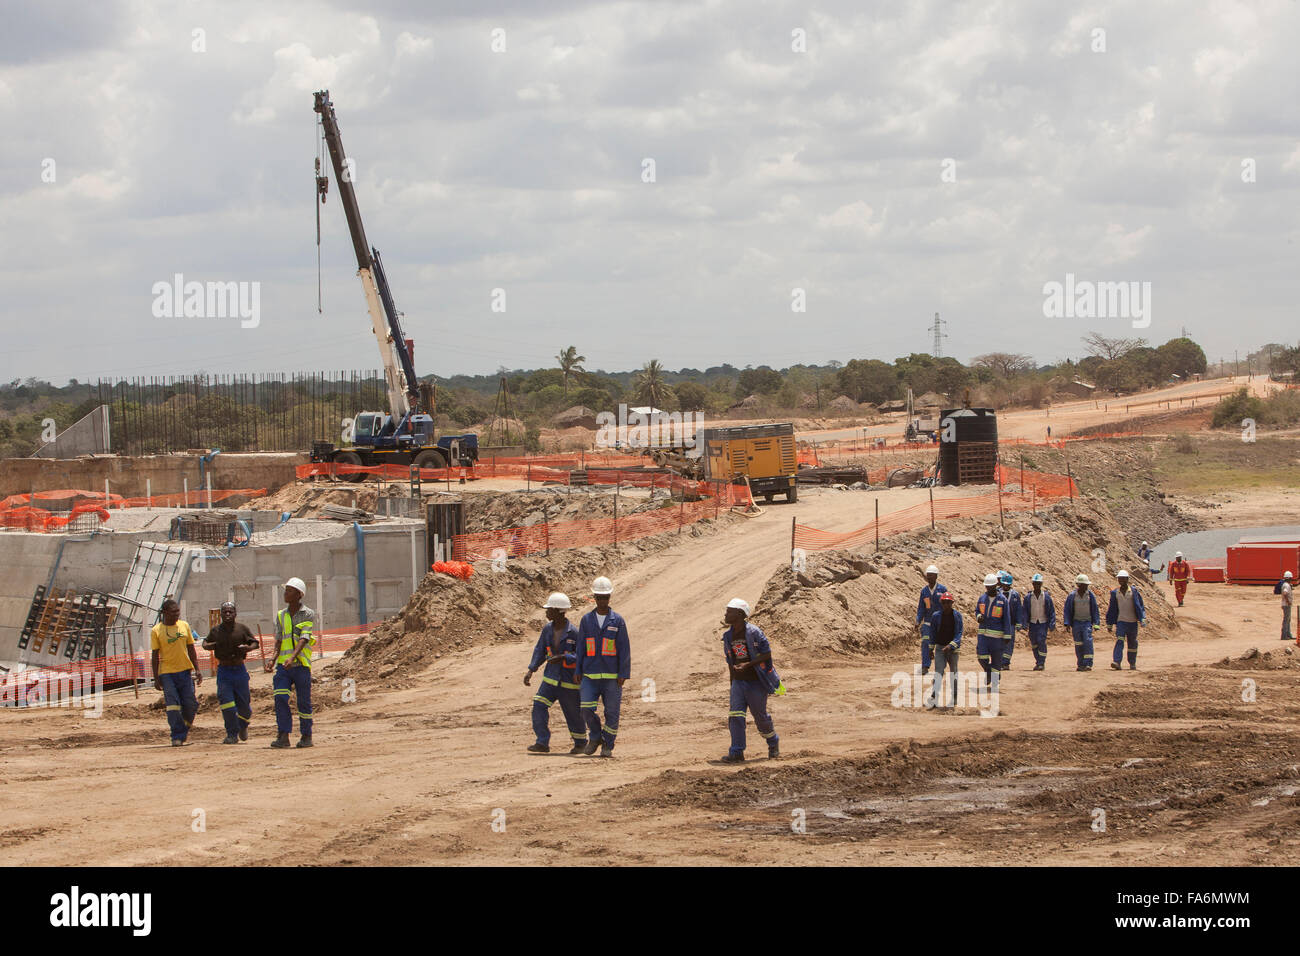 Le vieillissement des travailleurs réhabiliter le barrage de Nacala, dans la province de Nampula, Mozambique, se l'Afrique. Banque D'Images